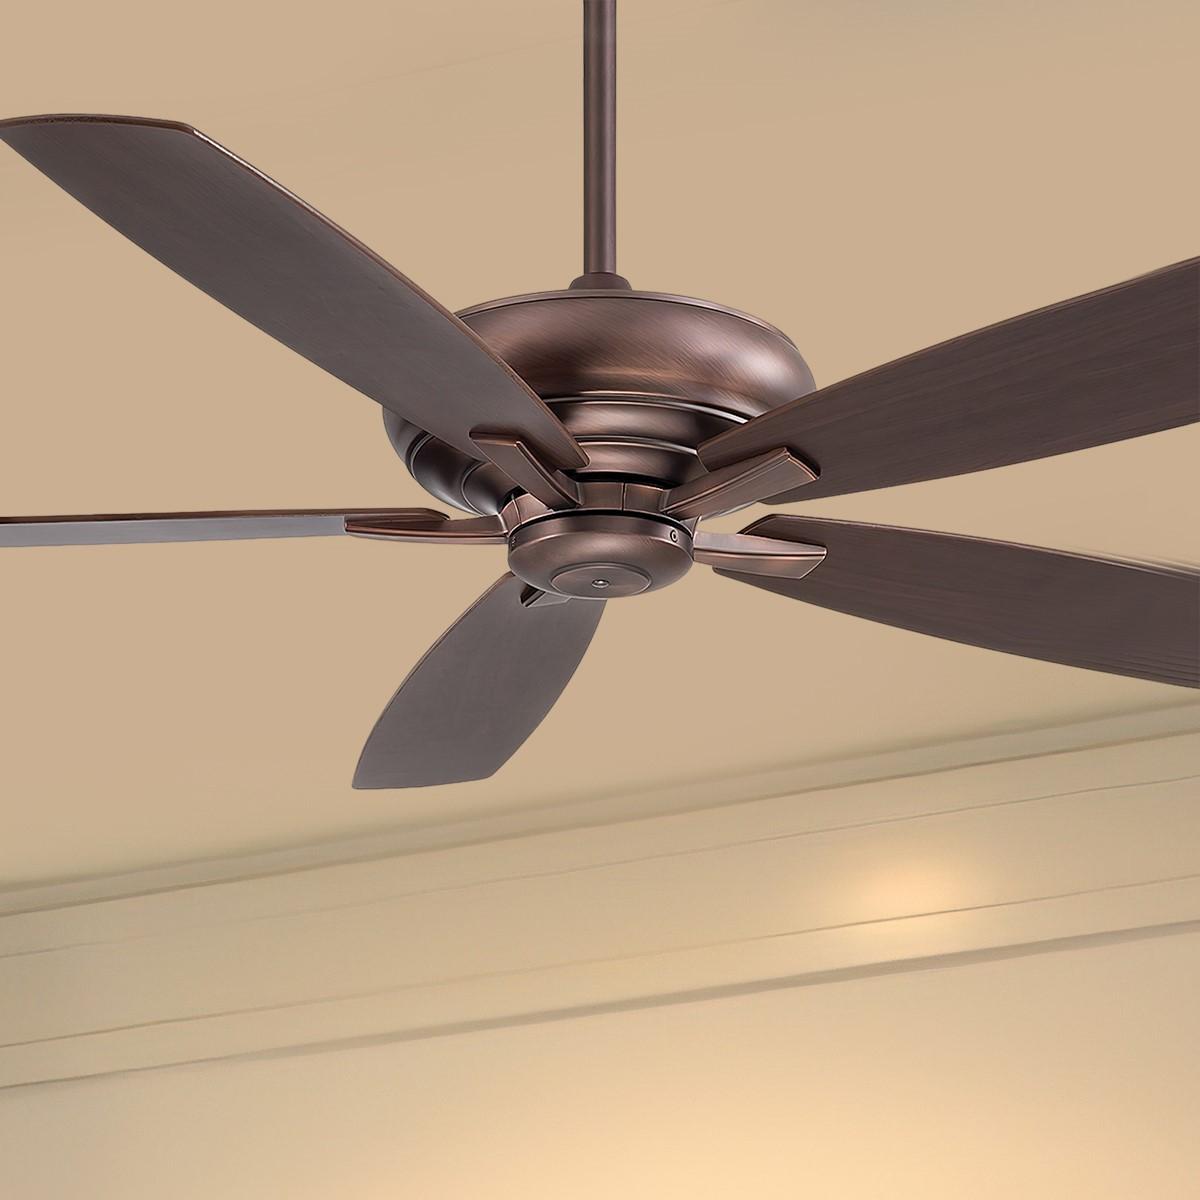 Kola XL 60 Inch Ceiling Fan With Remote, Dark Brushed Bronze with Dark Maple/Dark Walnut Blades - Bees Lighting